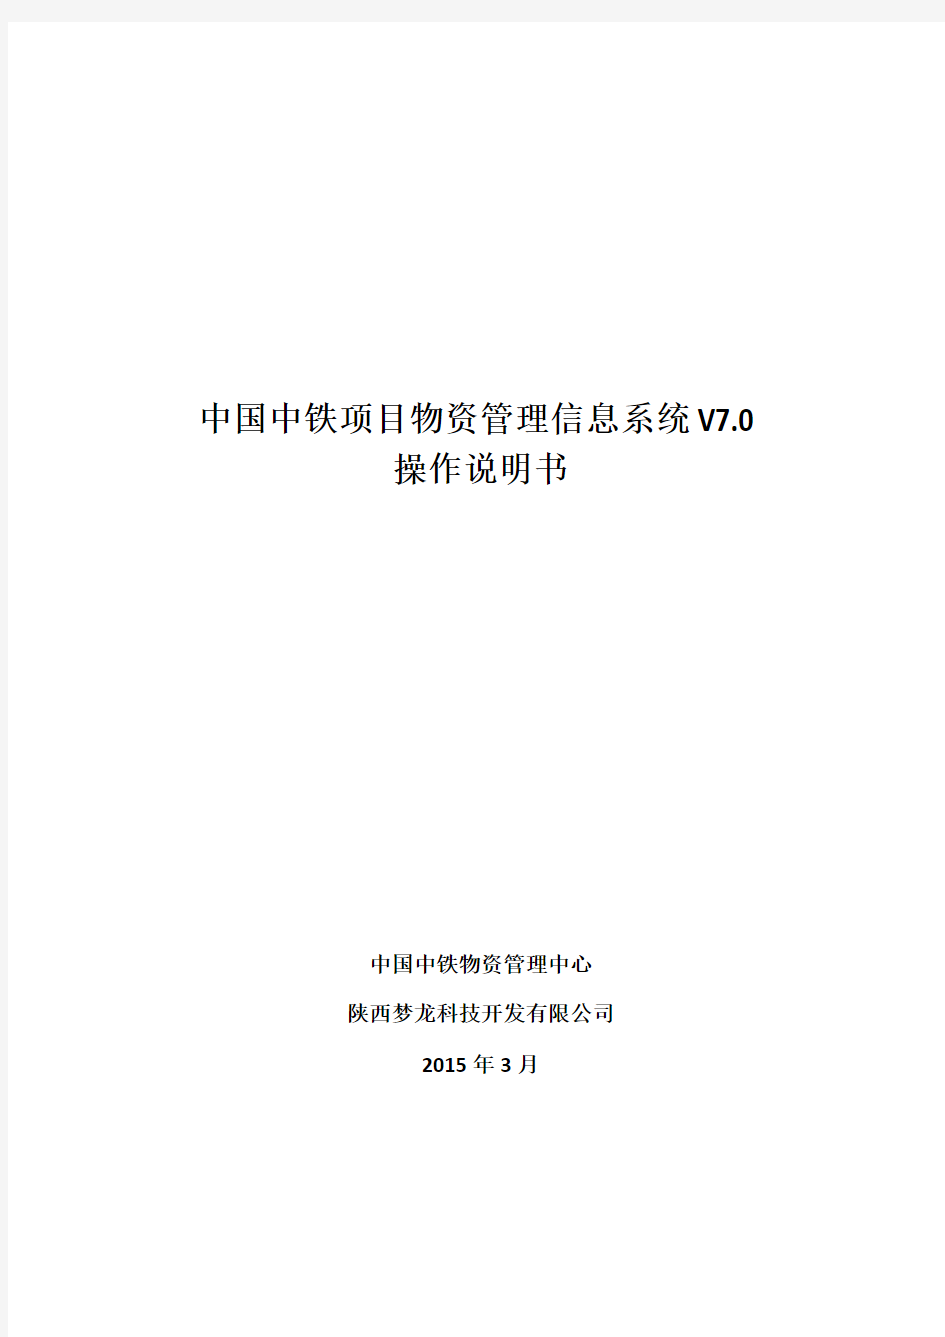 中国中铁项目物资管理信息系统V操作说明-(-)